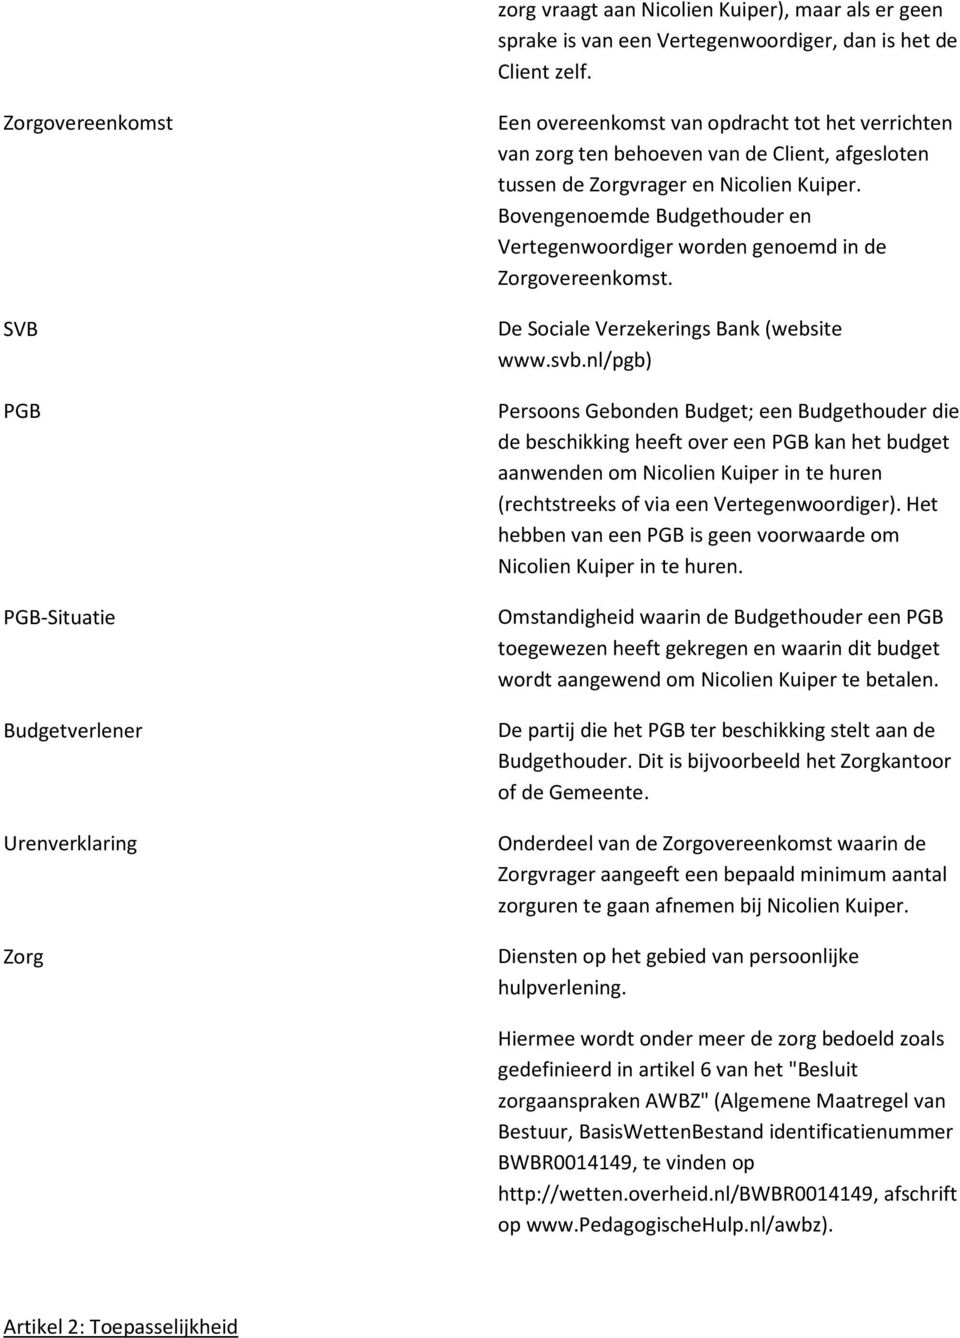 Nicolien Kuiper. Bovengenoemde Budgethouder en Vertegenwoordiger worden genoemd in de Zorgovereenkomst. De Sociale Verzekerings Bank (website www.svb.